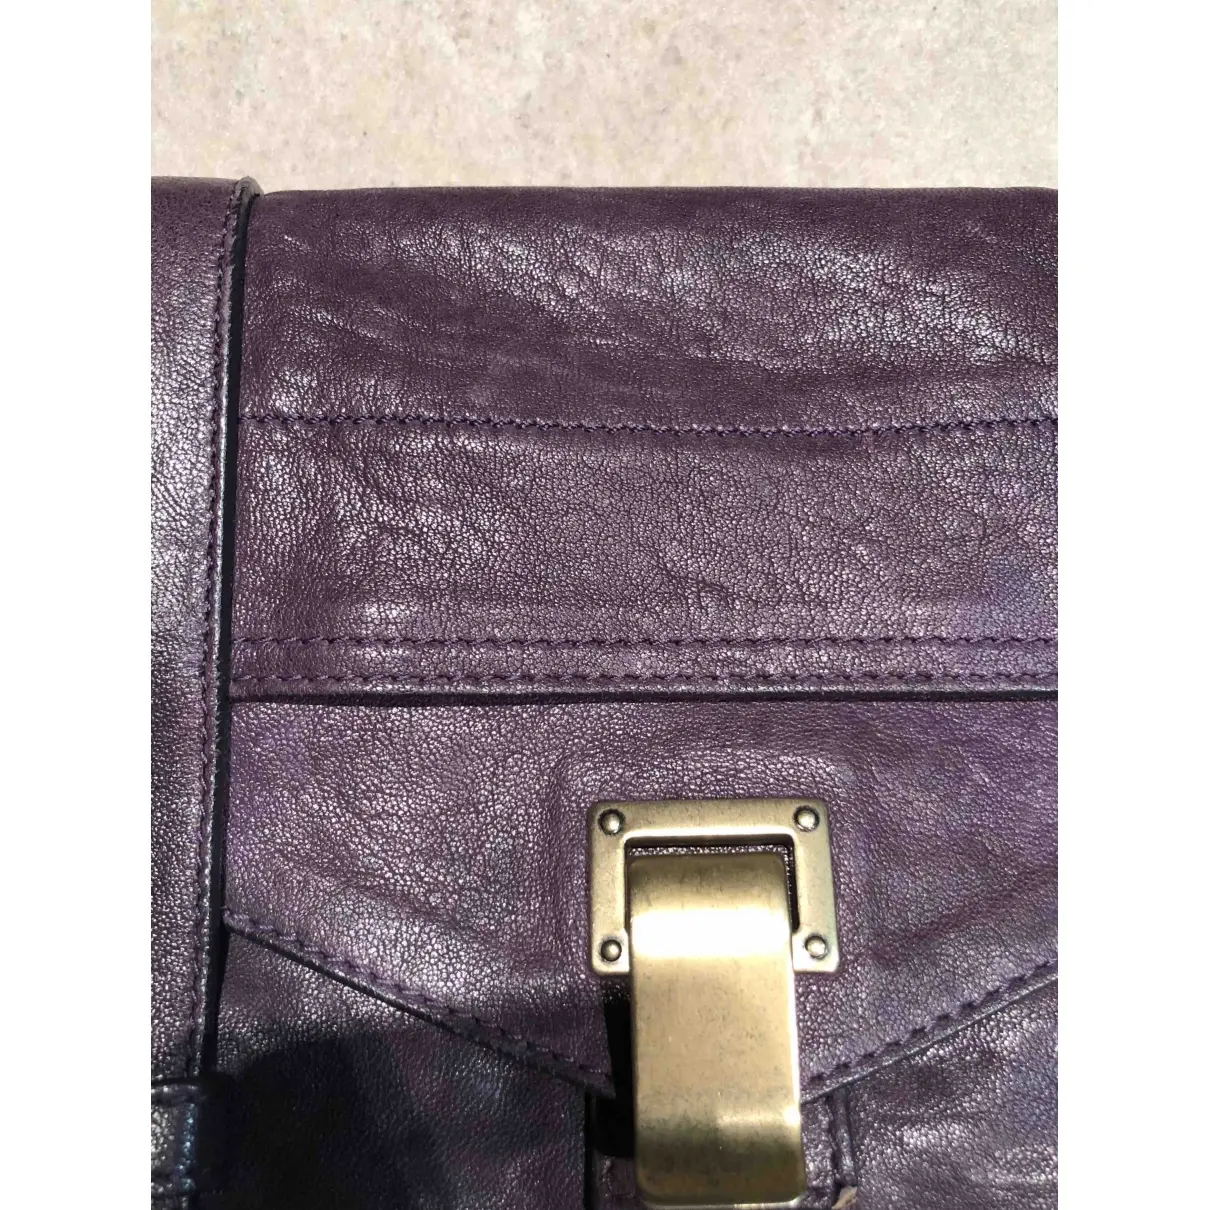 Buy Proenza Schouler PS1 leather clutch bag online